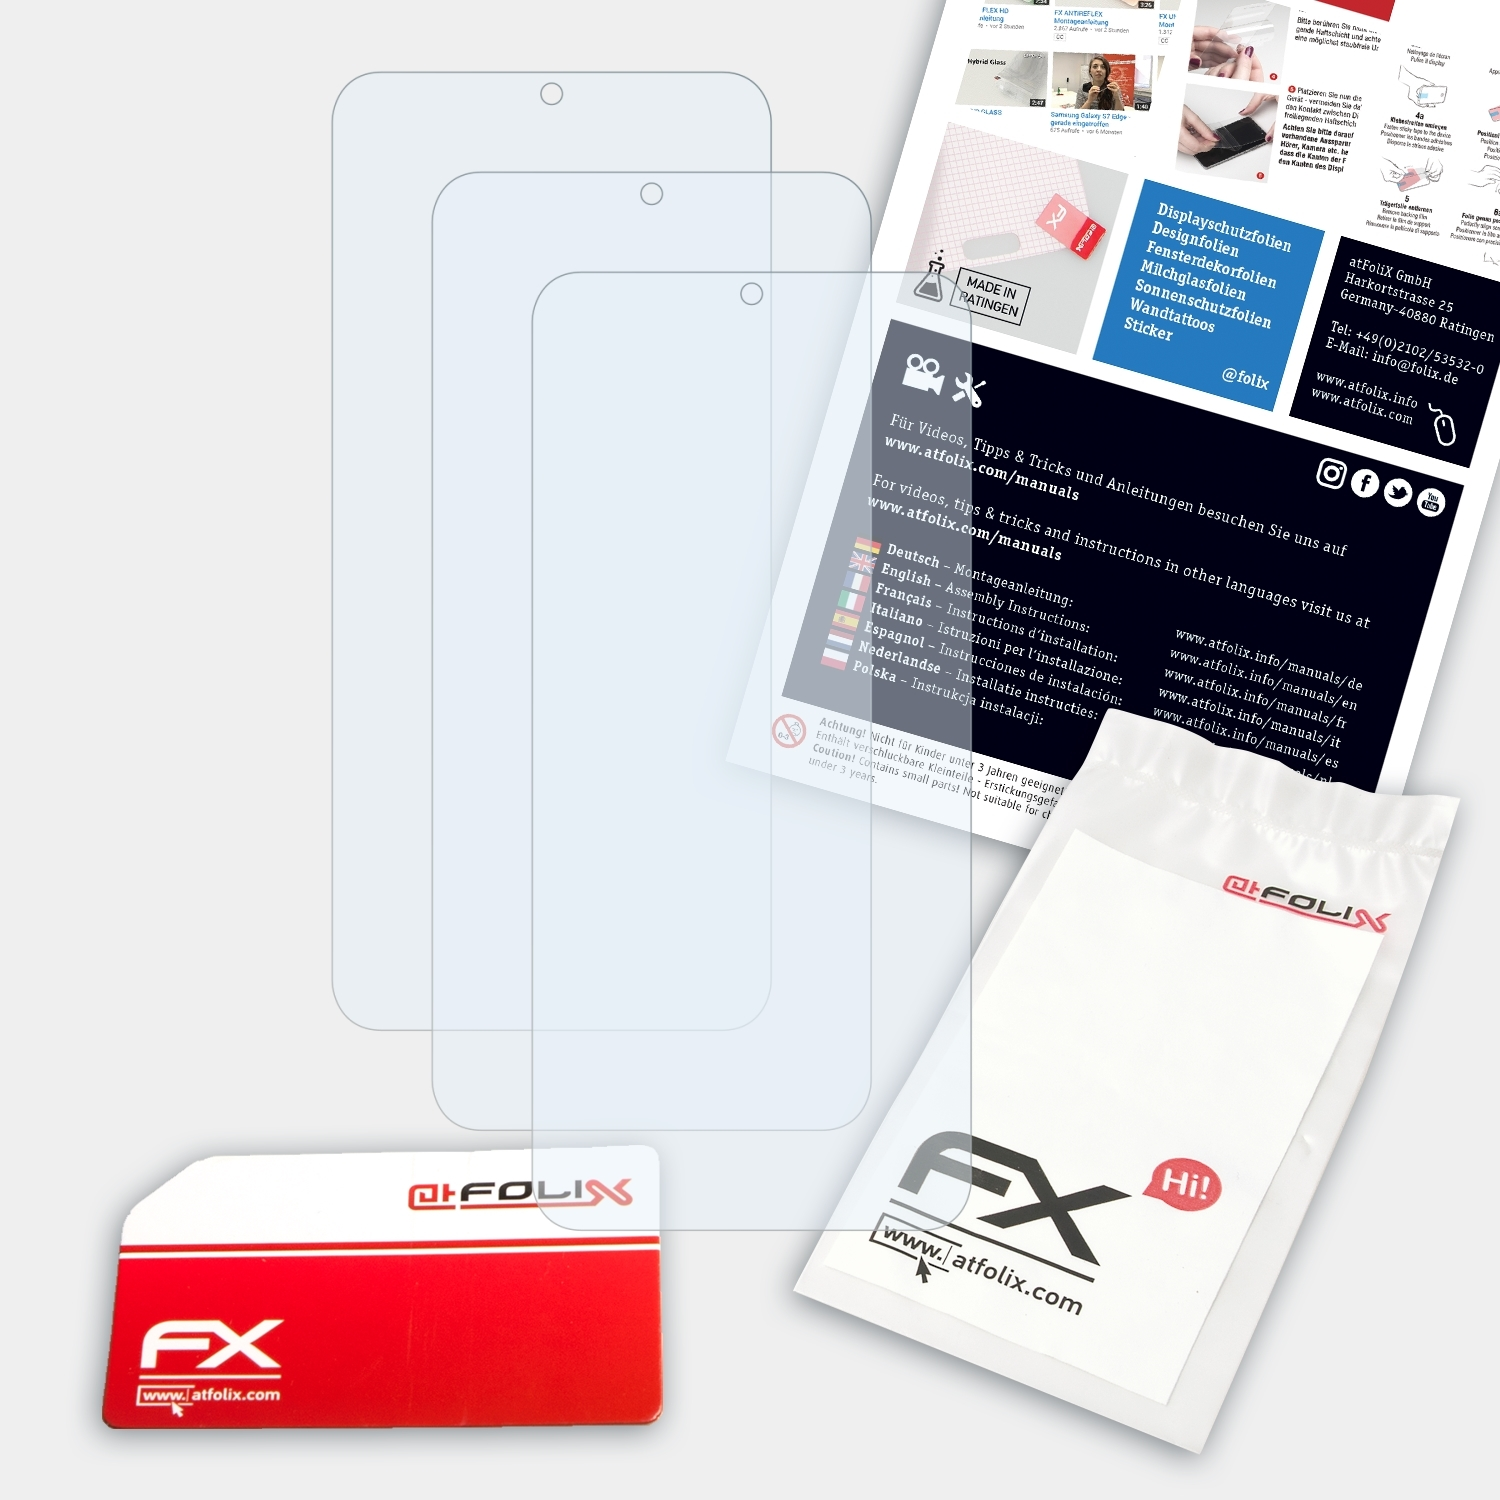 ATFOLIX 3x Displayschutz(für K22) LG FX-Clear